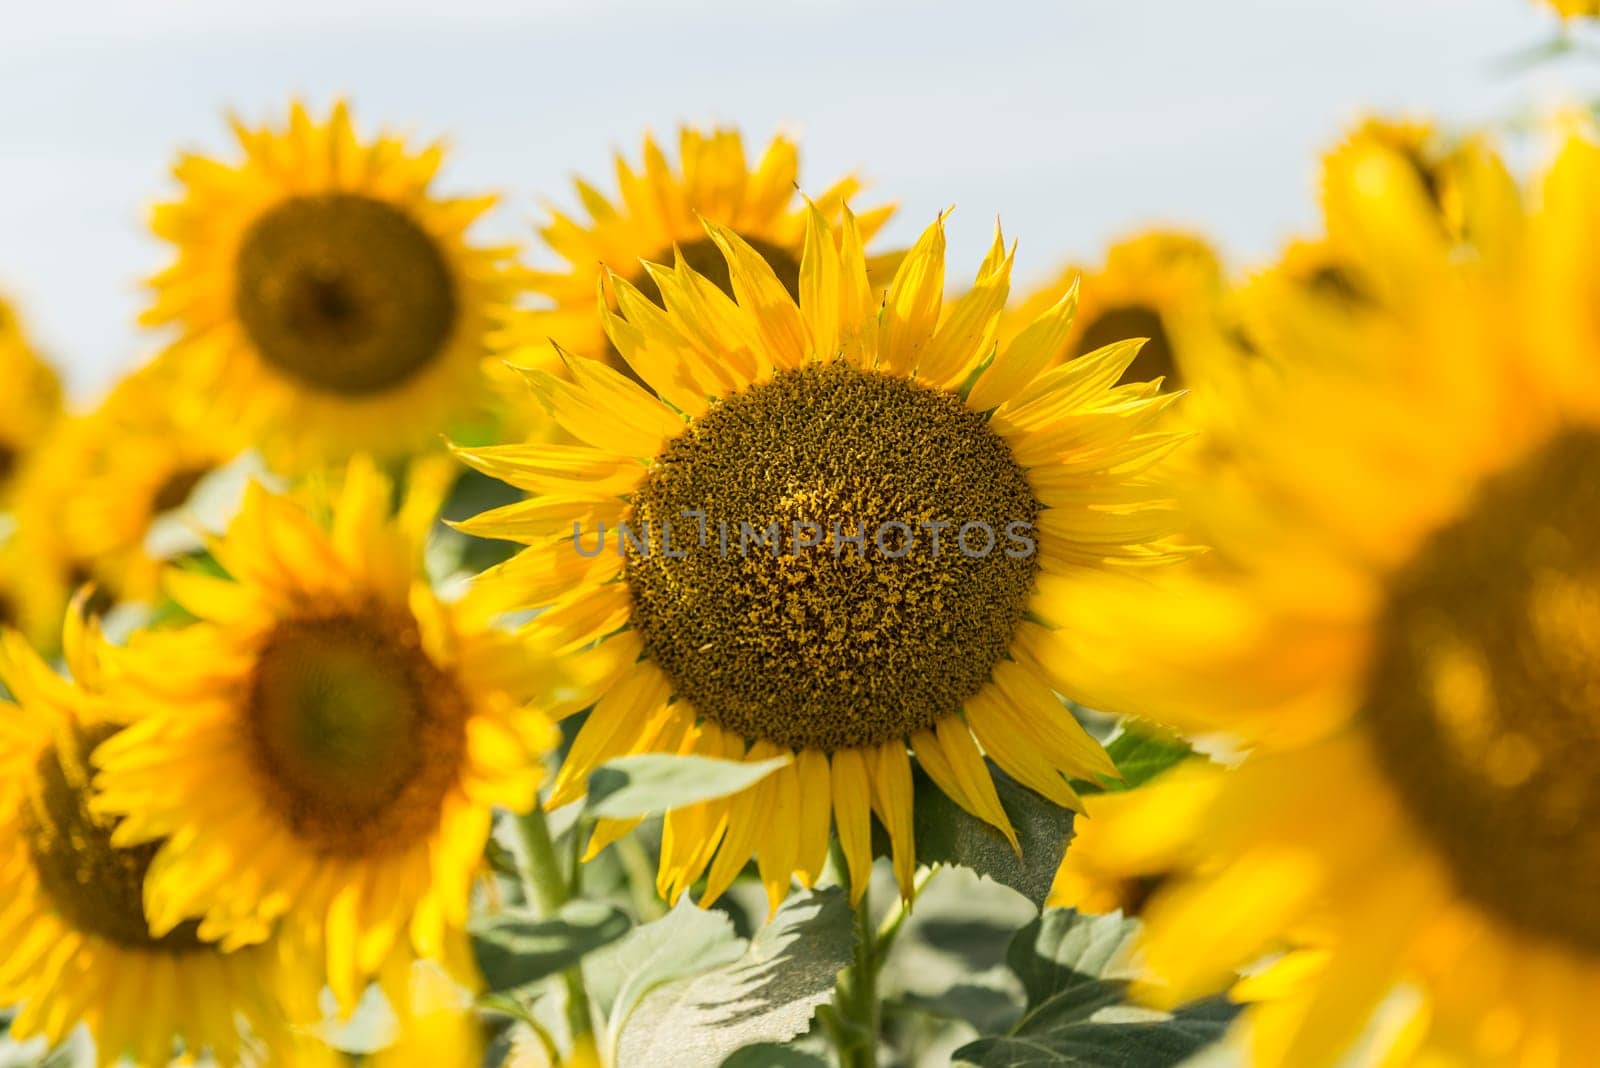 Sunflower field by emirkoo